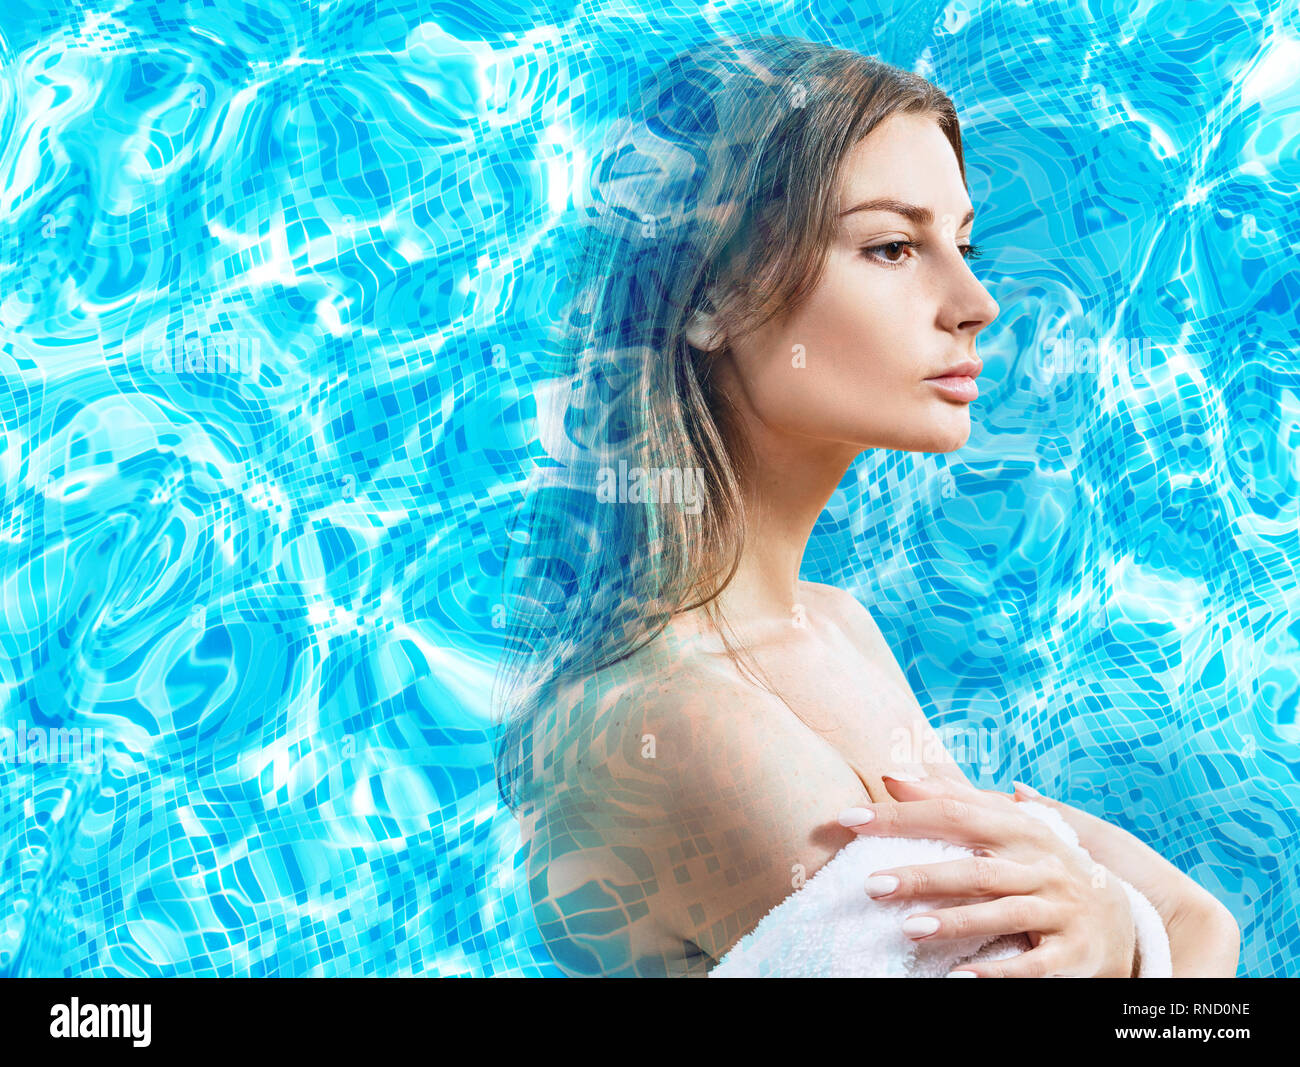 Doppia esposizione di volto femminile e una piscina di acqua corrente di ripple. Foto Stock